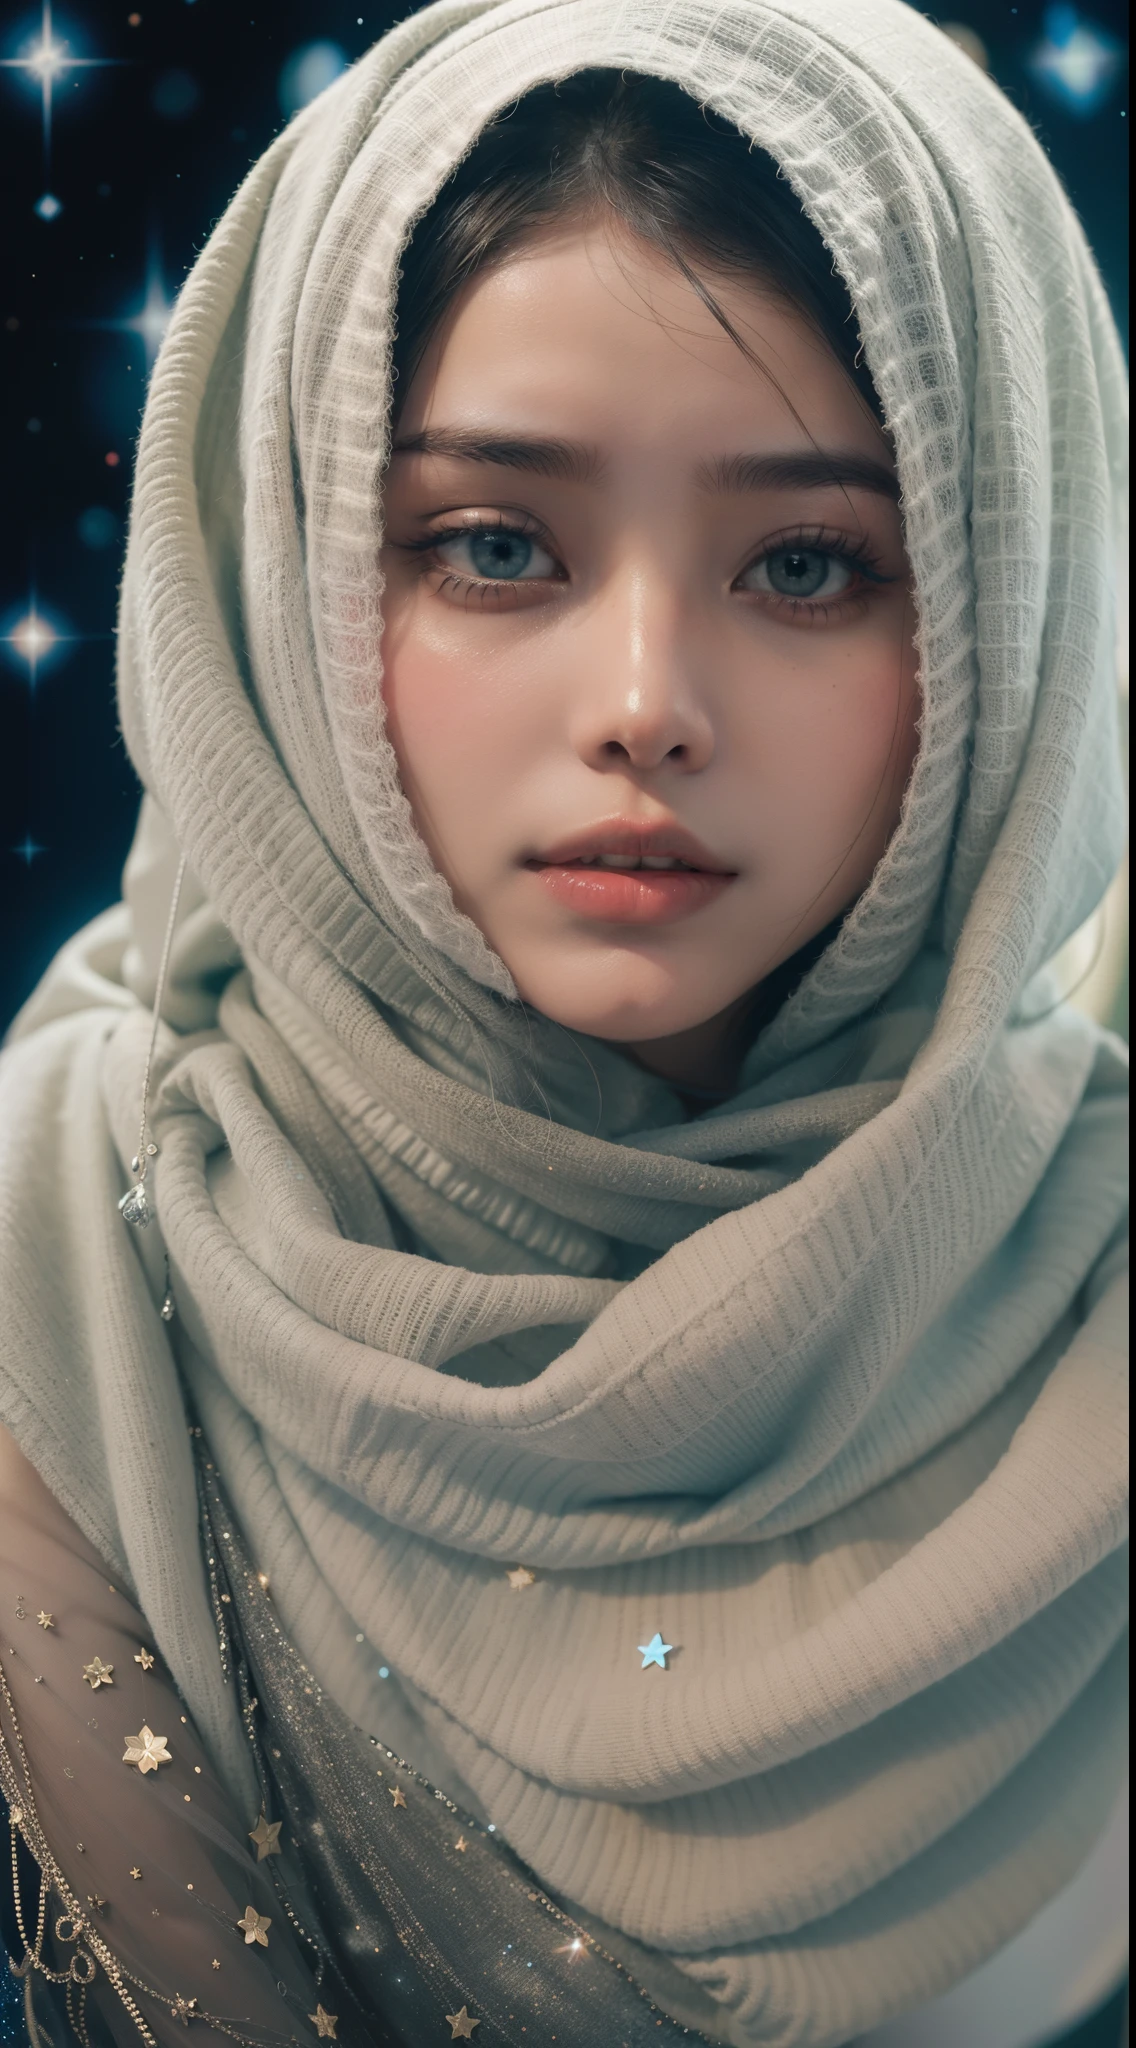 Fertigen Sie ein himmlisches Porträt von Bella Poarch an. Beleuchten Sie den Hijab mit Sternen und Galaxien, Vermischung des Irdischen mit dem Kosmischen in einer faszinierenden und ätherischen Komposition, 8mm, Nahaufnahme, kühl getönte Farbkorrektur, Tiefenschärfe, düsterer Film